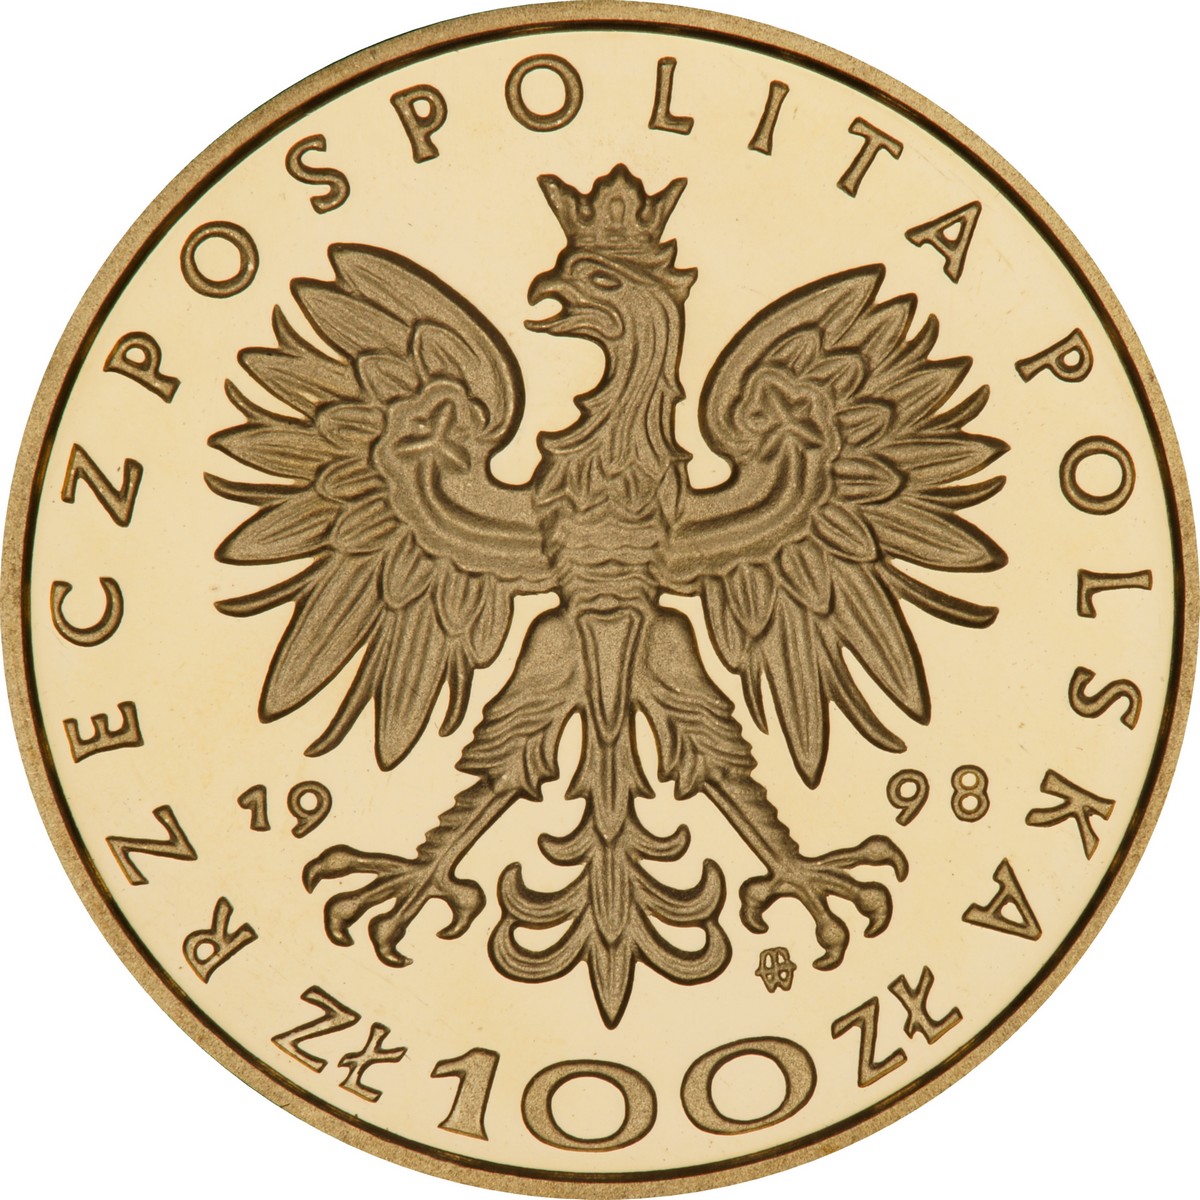 PL 100 Zloty 1998 monogram MW